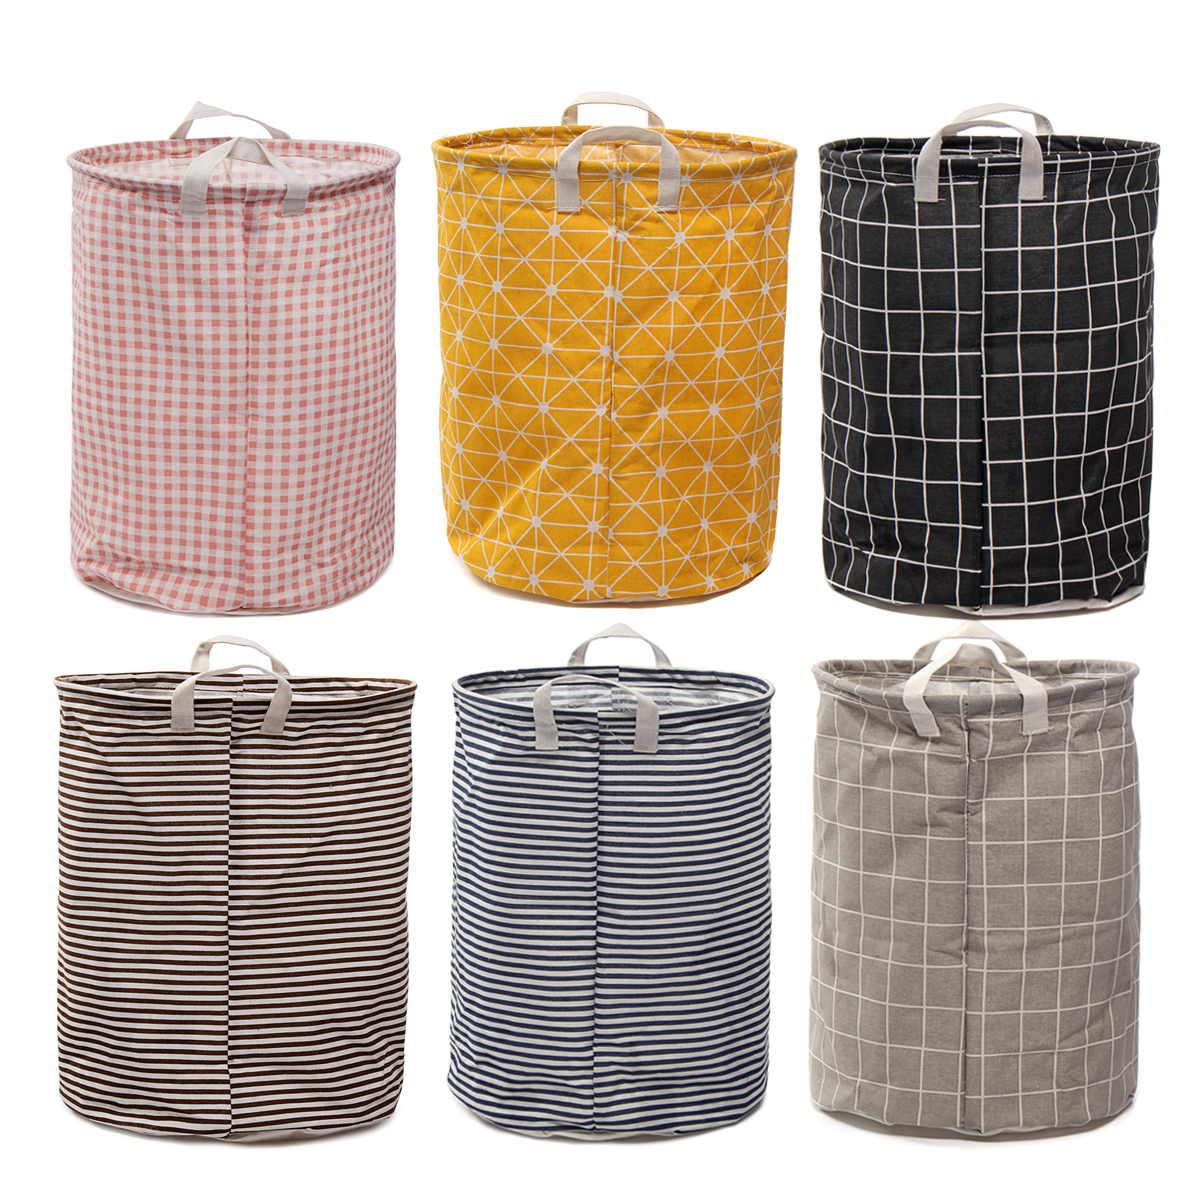 

Foldable Large Storage Laundry Hamper Clothes Baskets Sorter Canvas Laundry Washing Bag